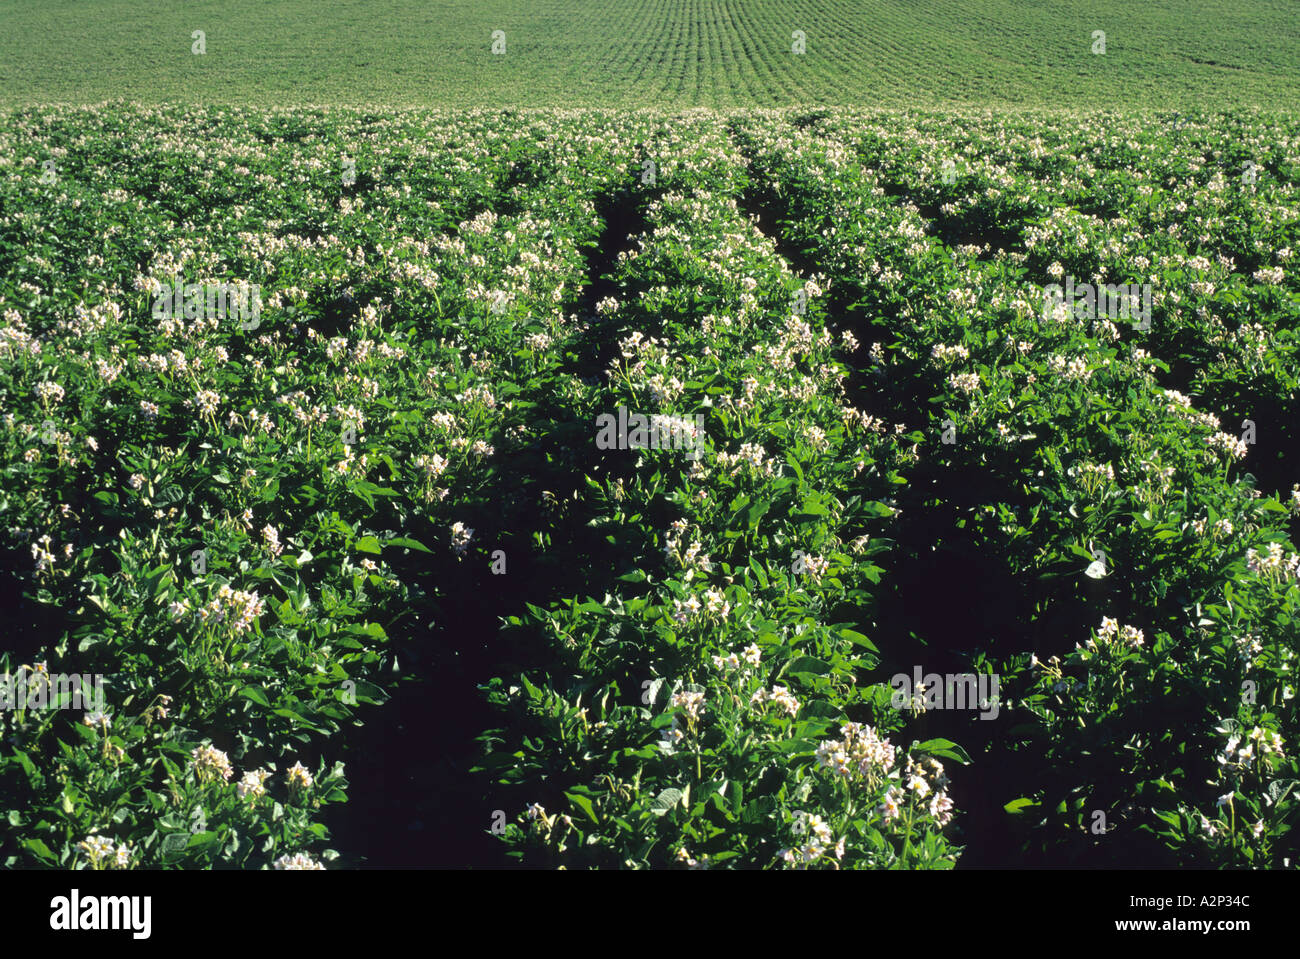 Idaho potato field in bloom  Stock Photo